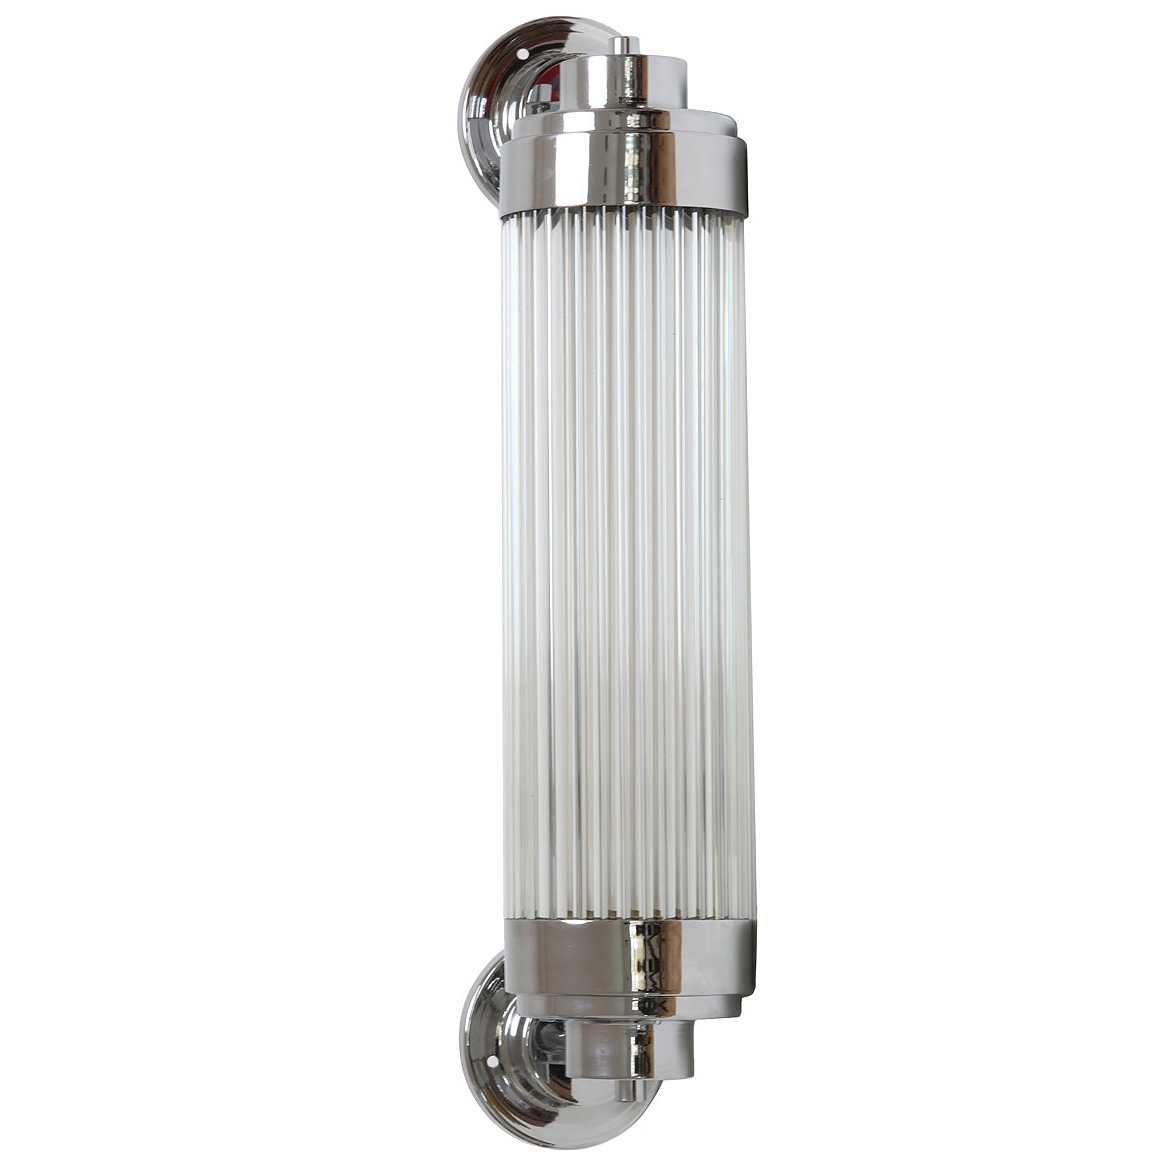 Exklusive LED-Wandleuchte, ideal für Badezimmer-Spiegel: Exklusive Art déco-Wandleuchte mit LED-Technik, dimmbar, Messing verchromt